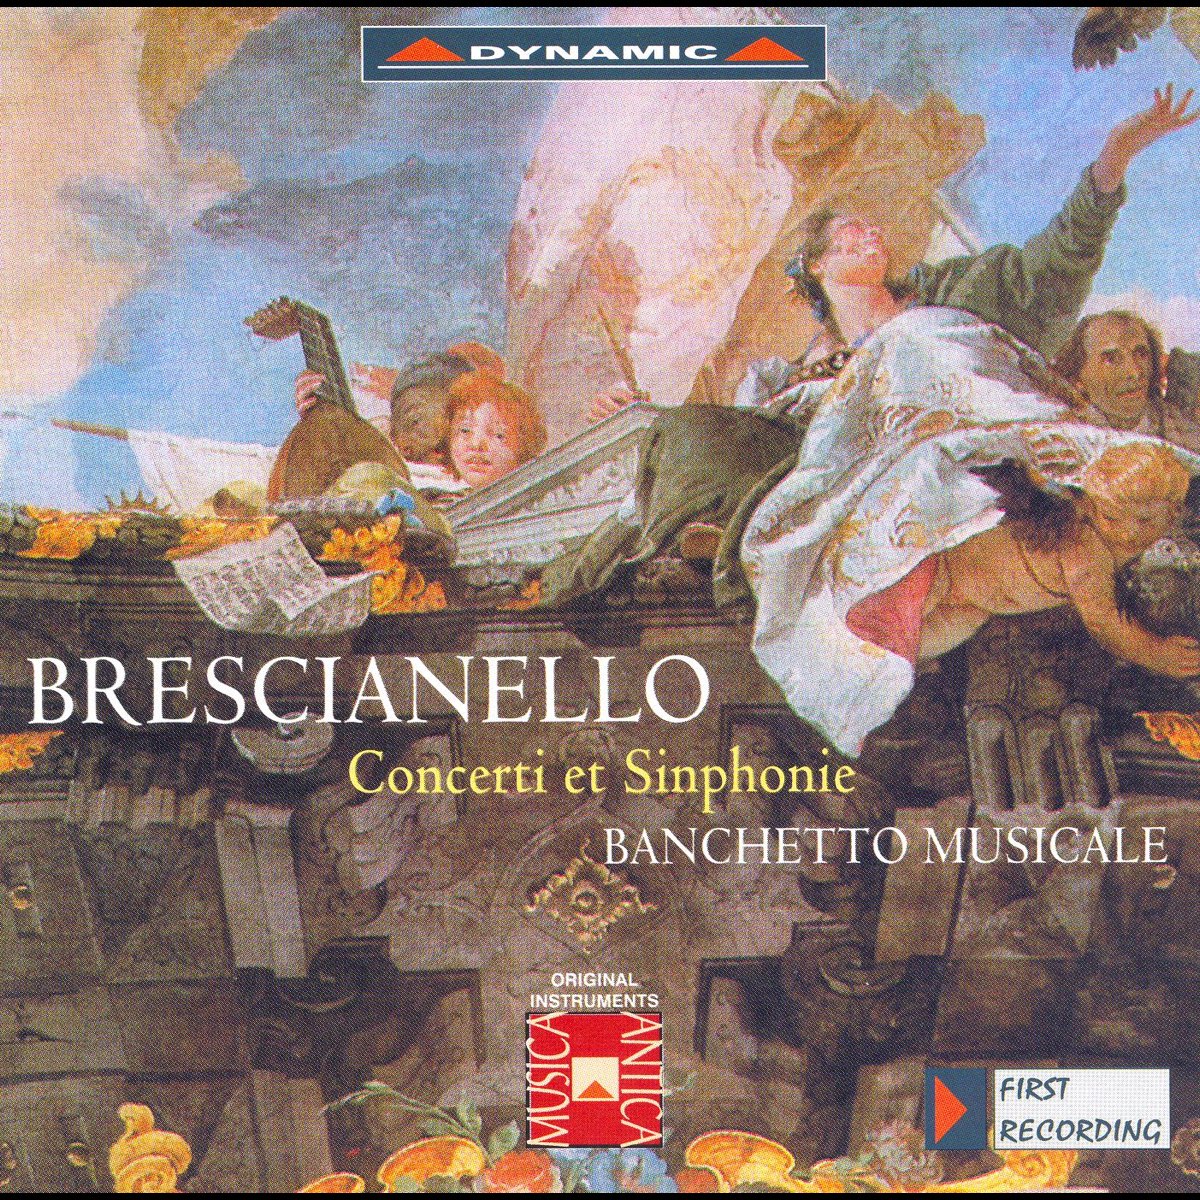 ‎Brescianello: Violin Concertos and Symphonies, Op. 1 by Banchetto ...